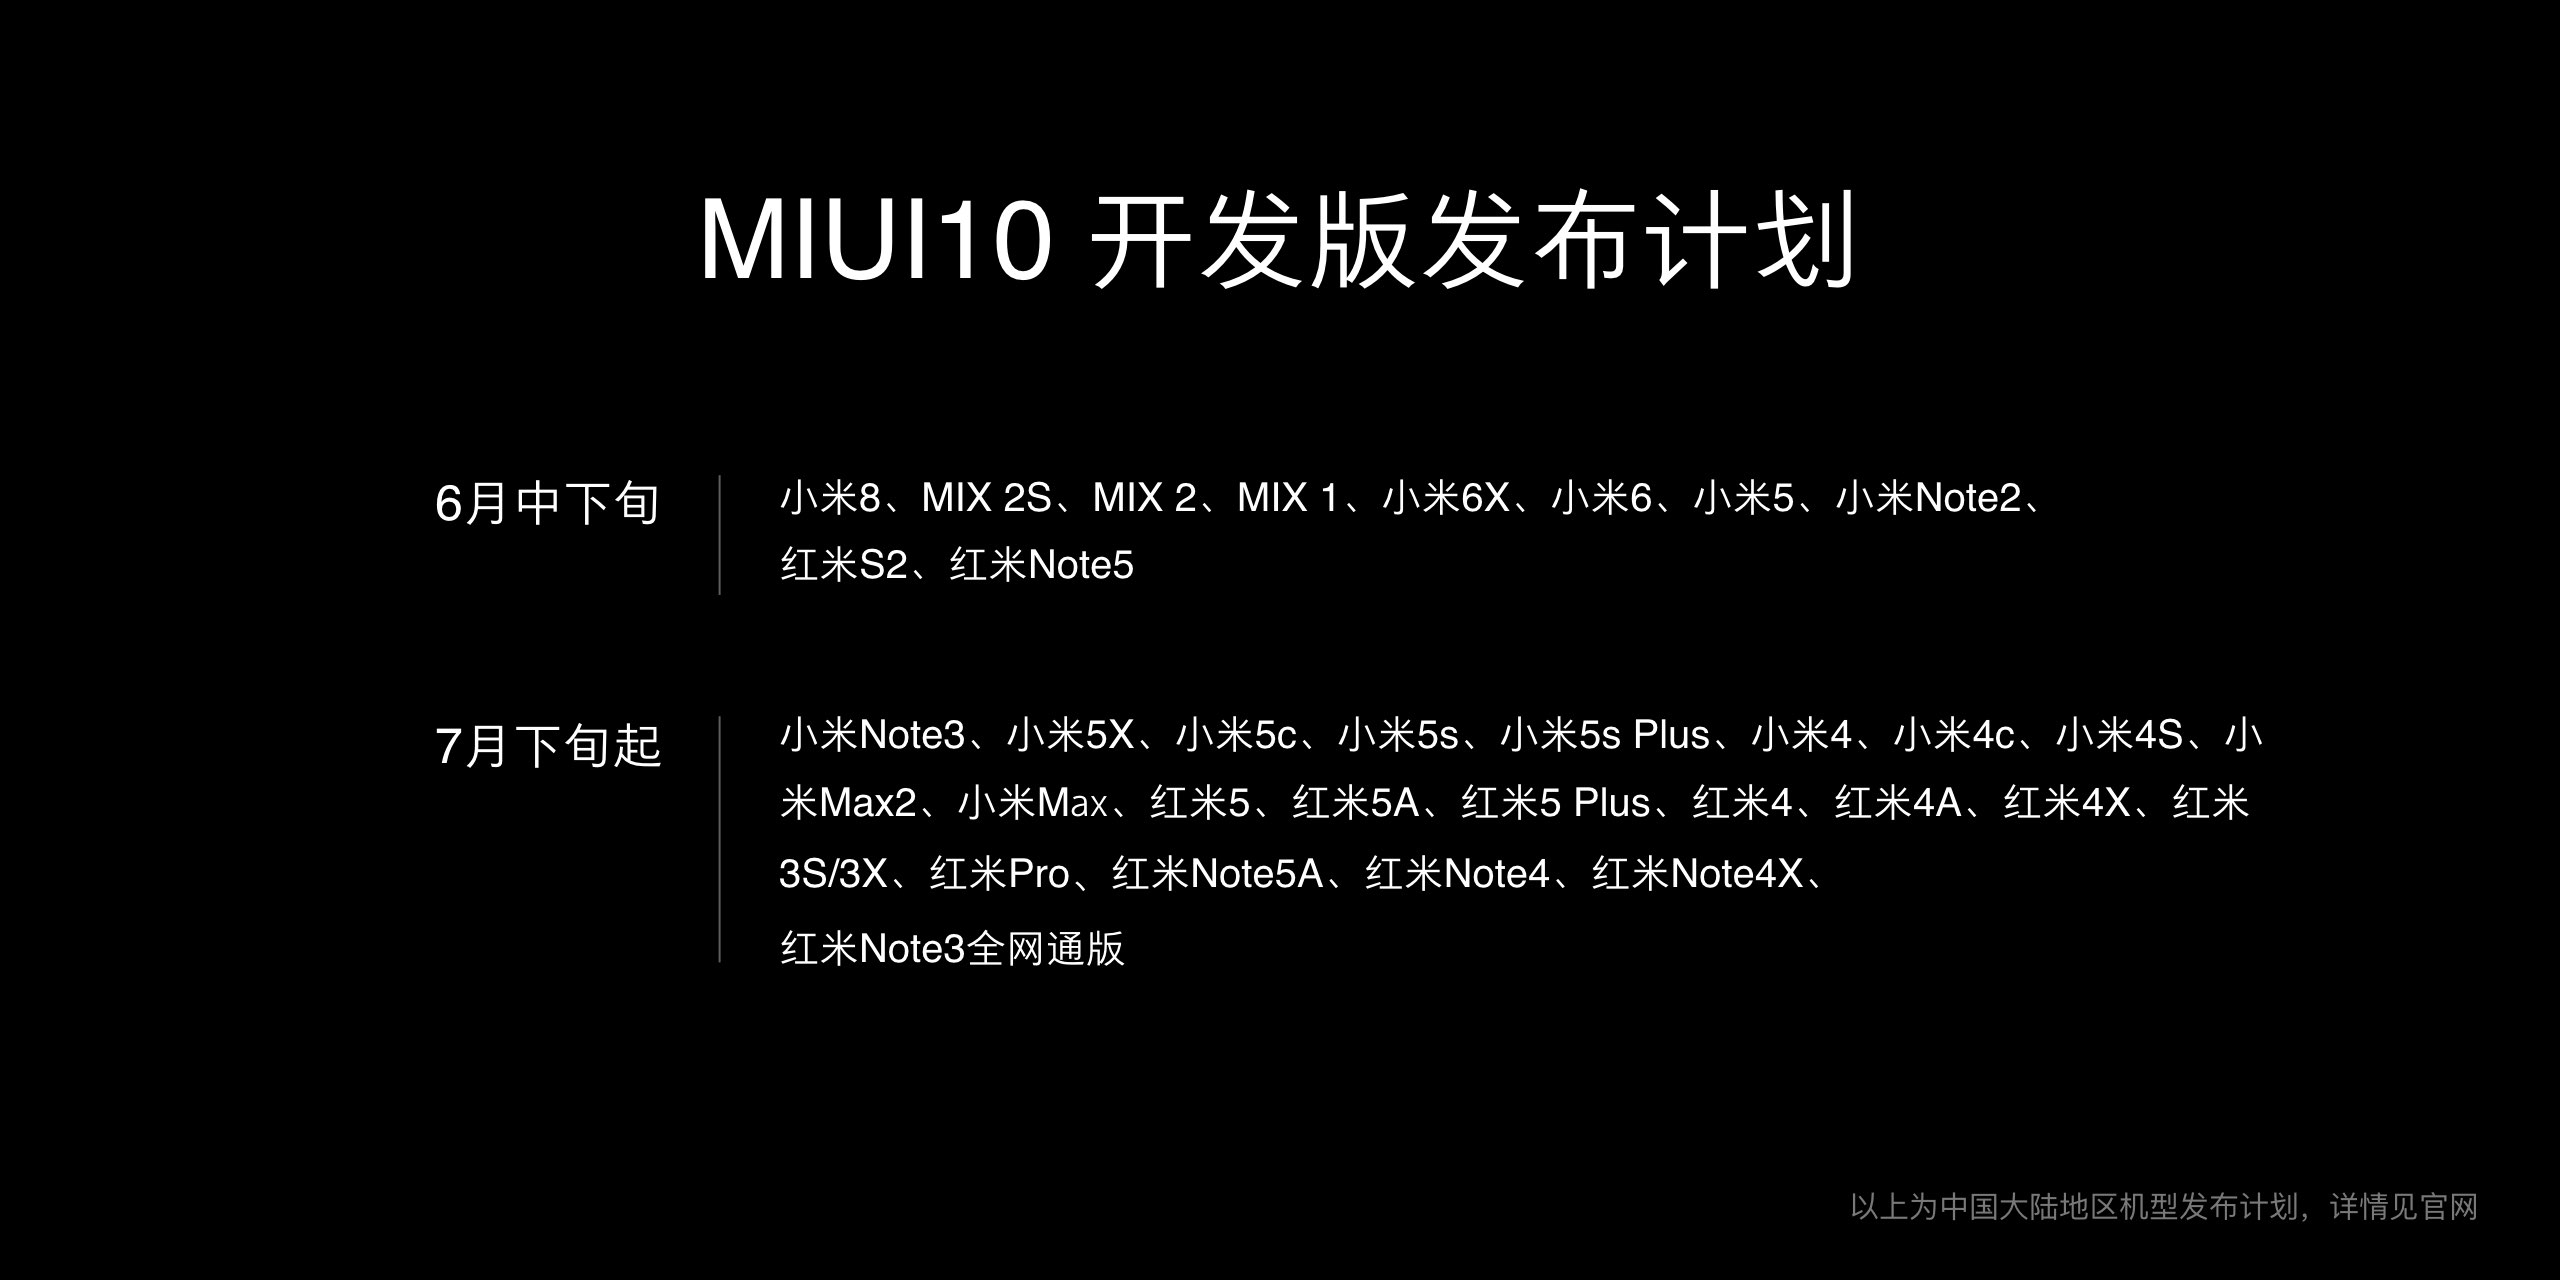 飞速！小米MIUI 10首测开发版公布：十款手机可以升級抢鲜